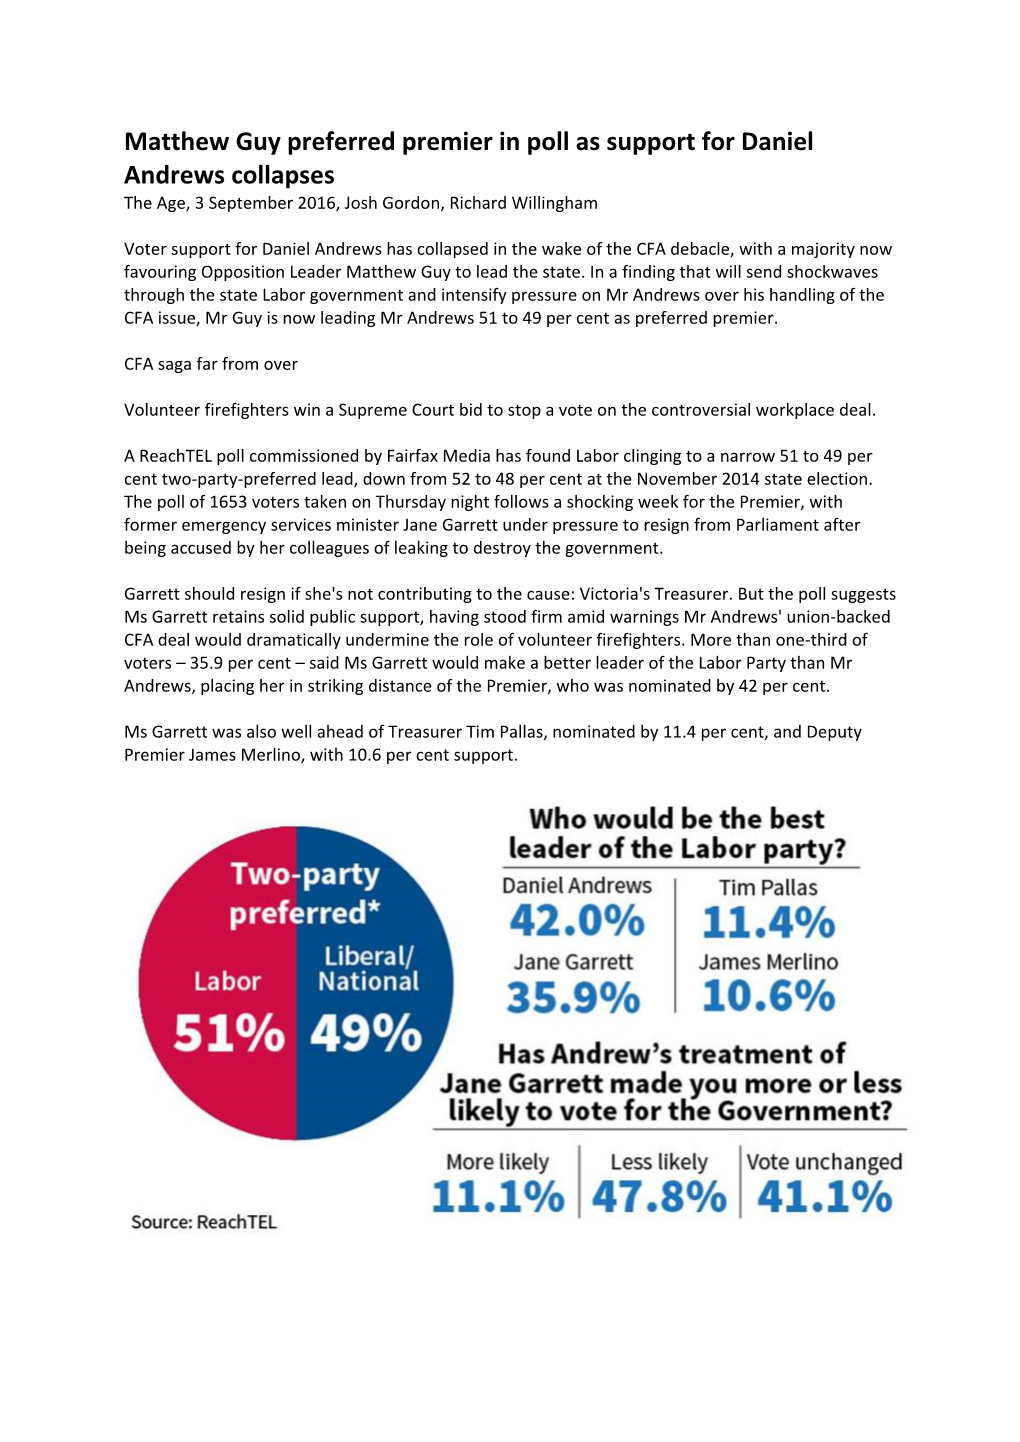 Matthew Guy Preferred Premier in Poll As Support for Daniel Andrews Collapses the Age, 3 September 2016, Josh Gordon, Richard Willingham